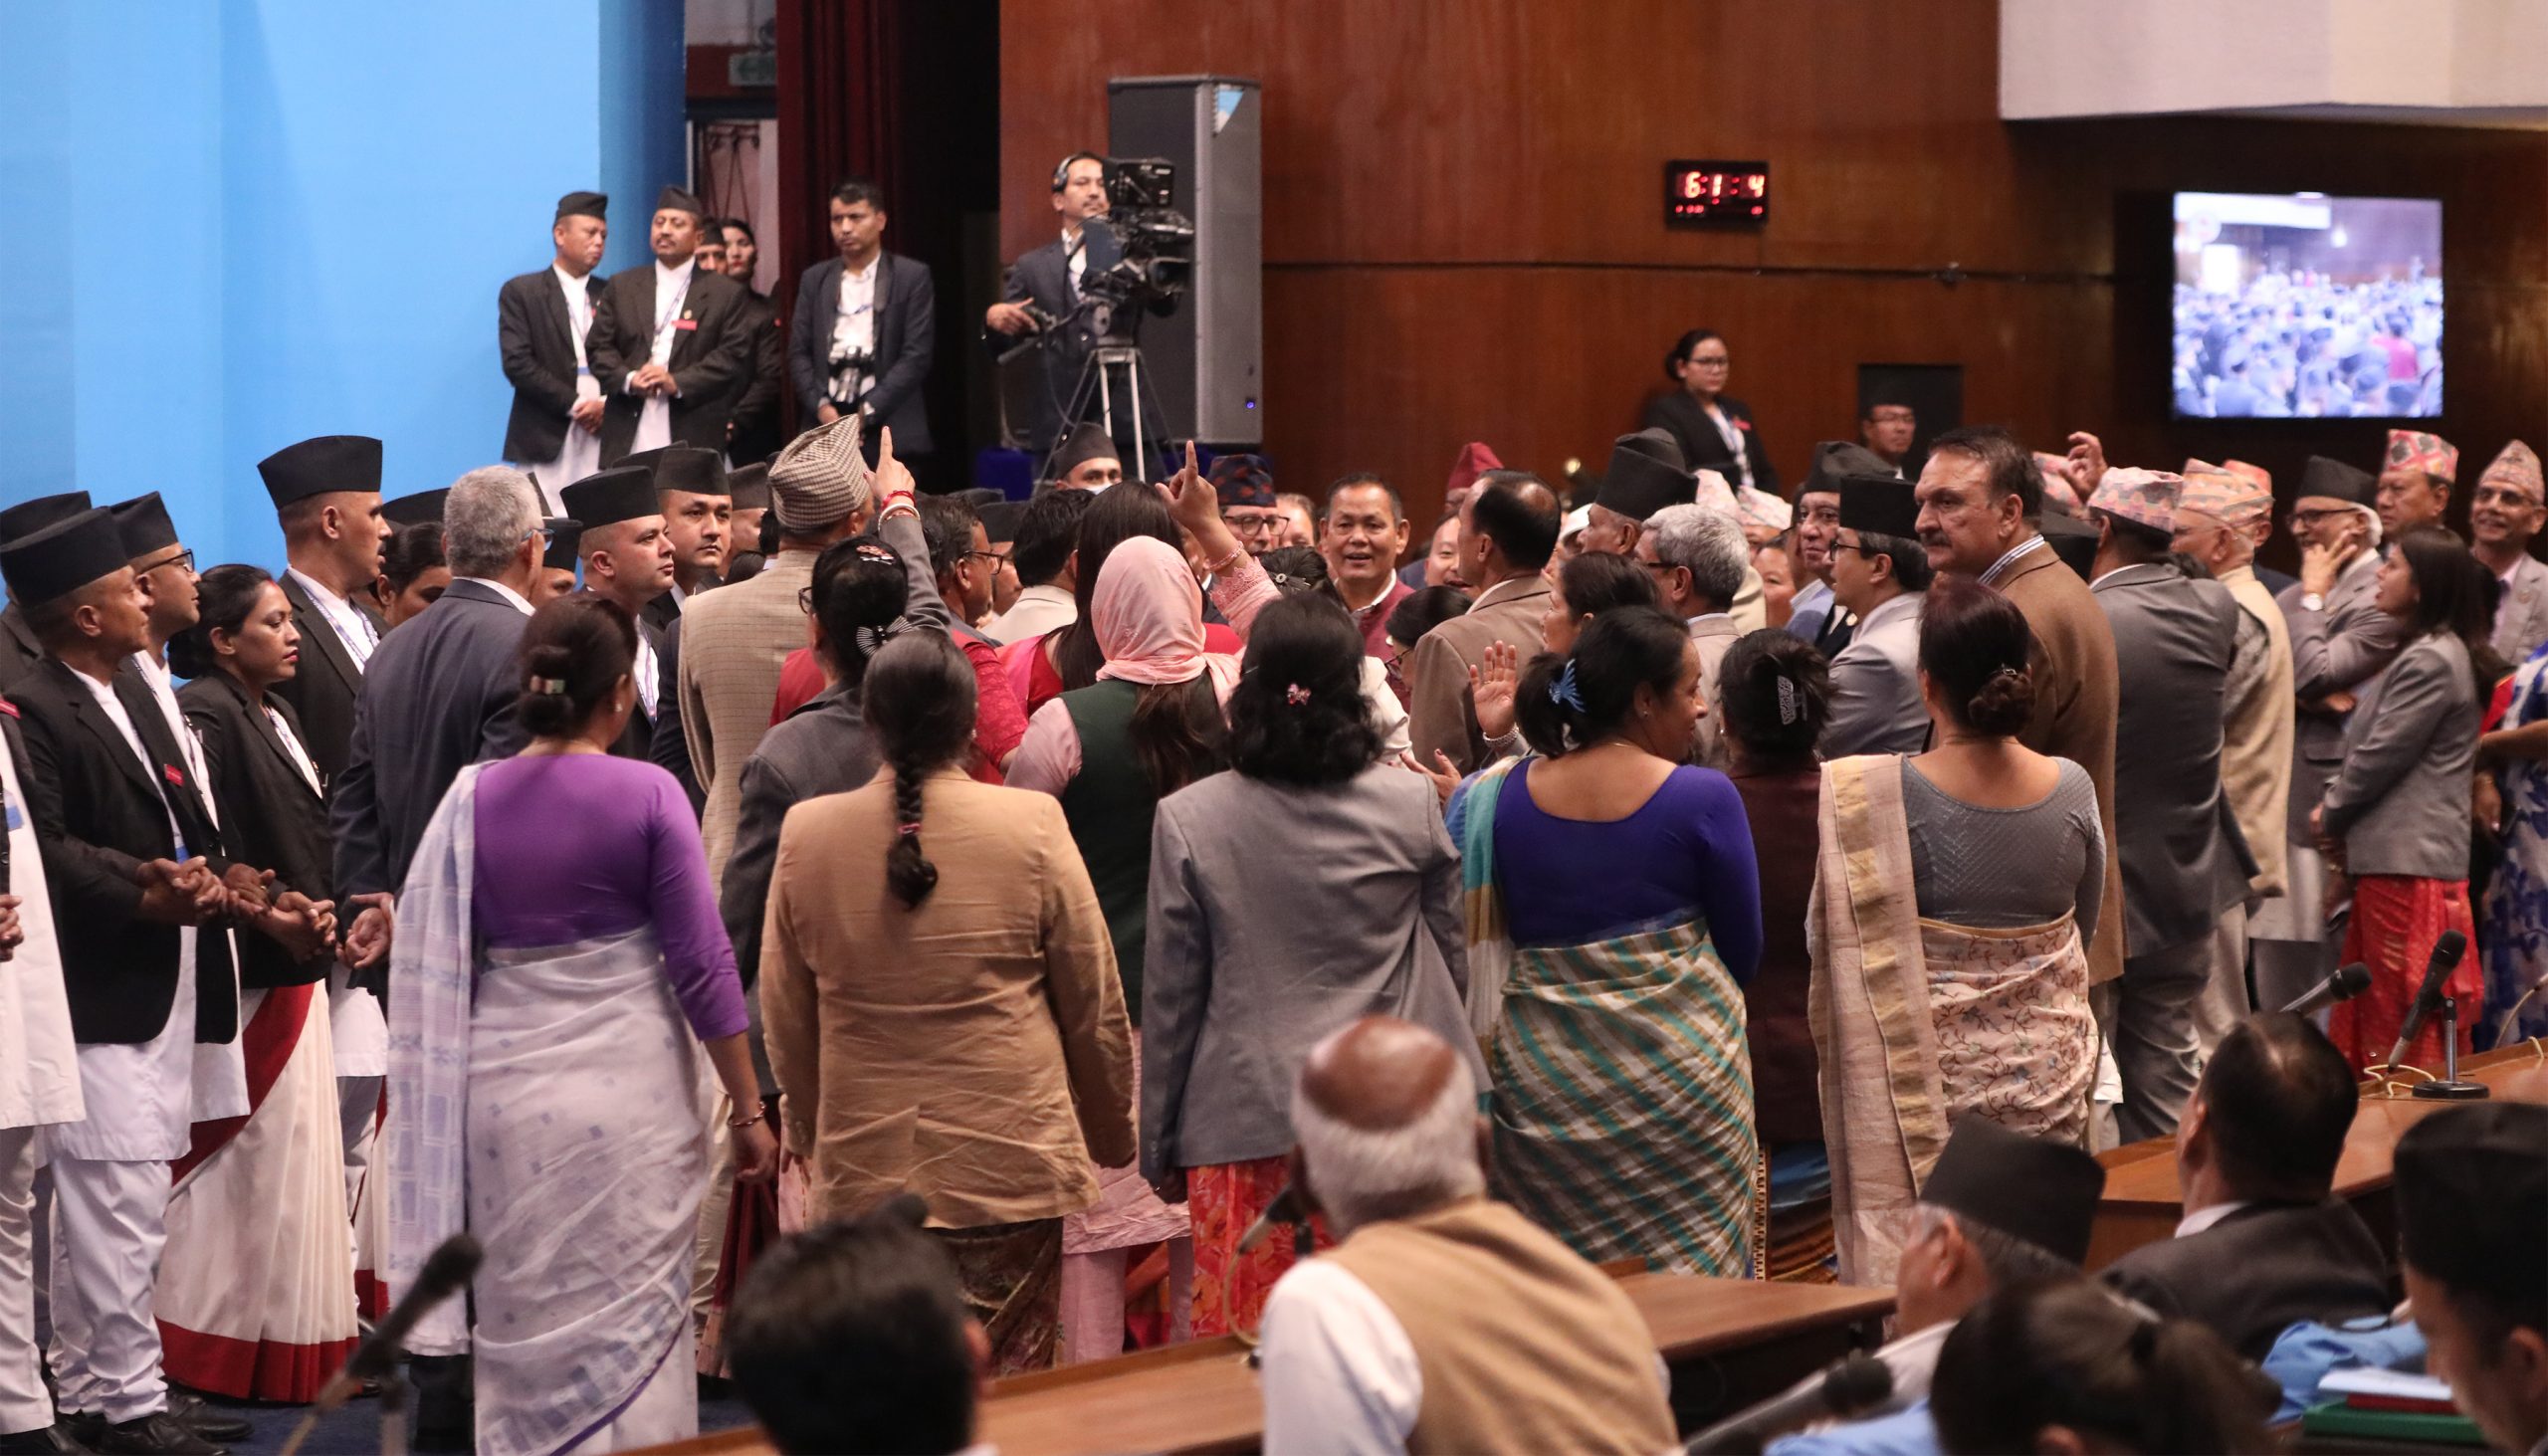 संसदीय समिति बनाउन सहमति जुटेन, काँग्रेसले संसद बैठक अवरोध गर्ने